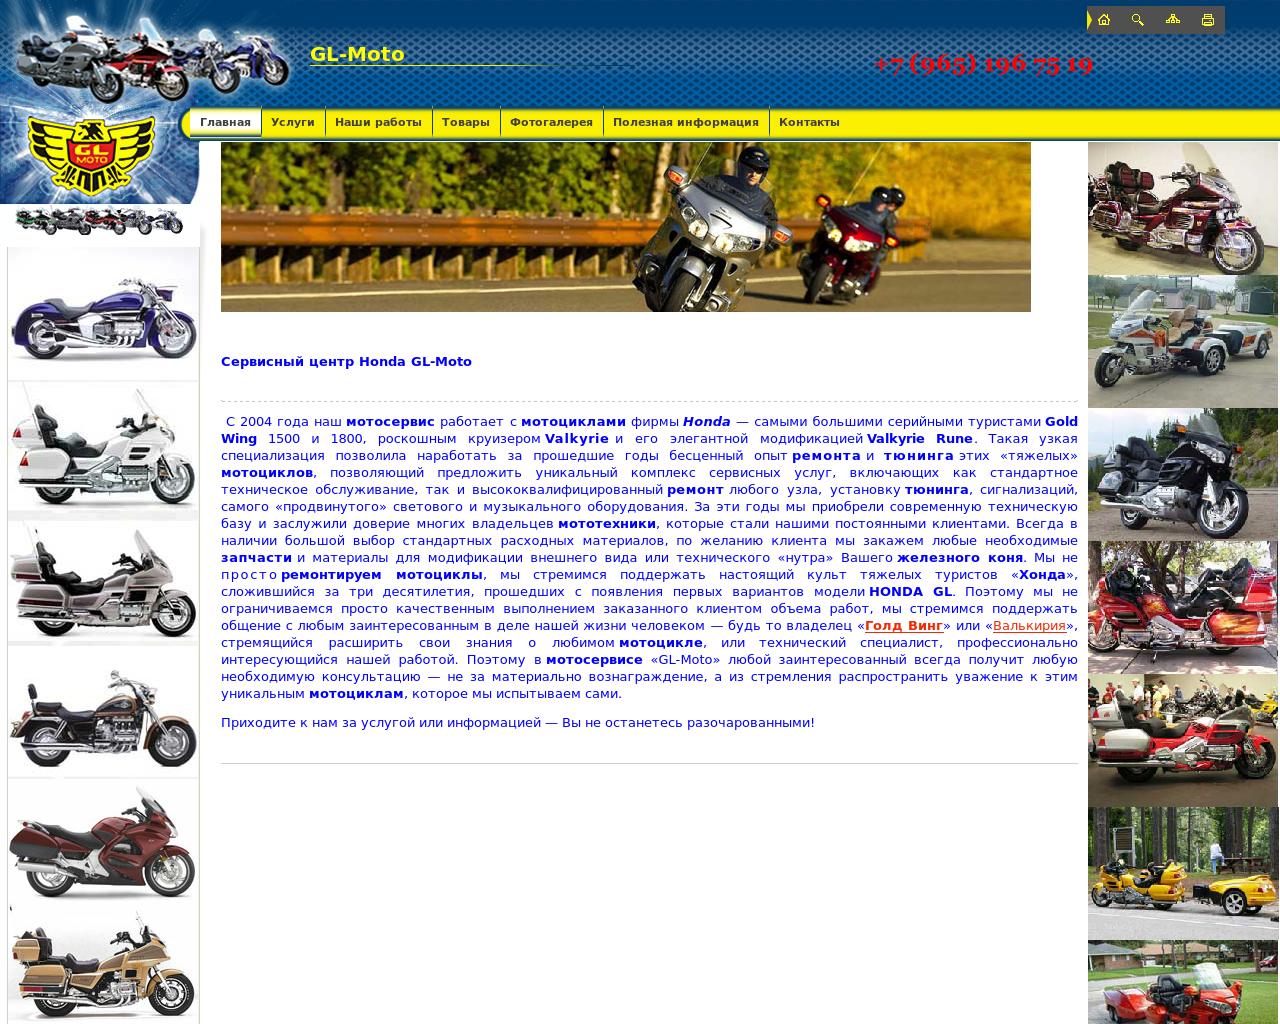 Изображение сайта gl-moto.ru в разрешении 1280x1024